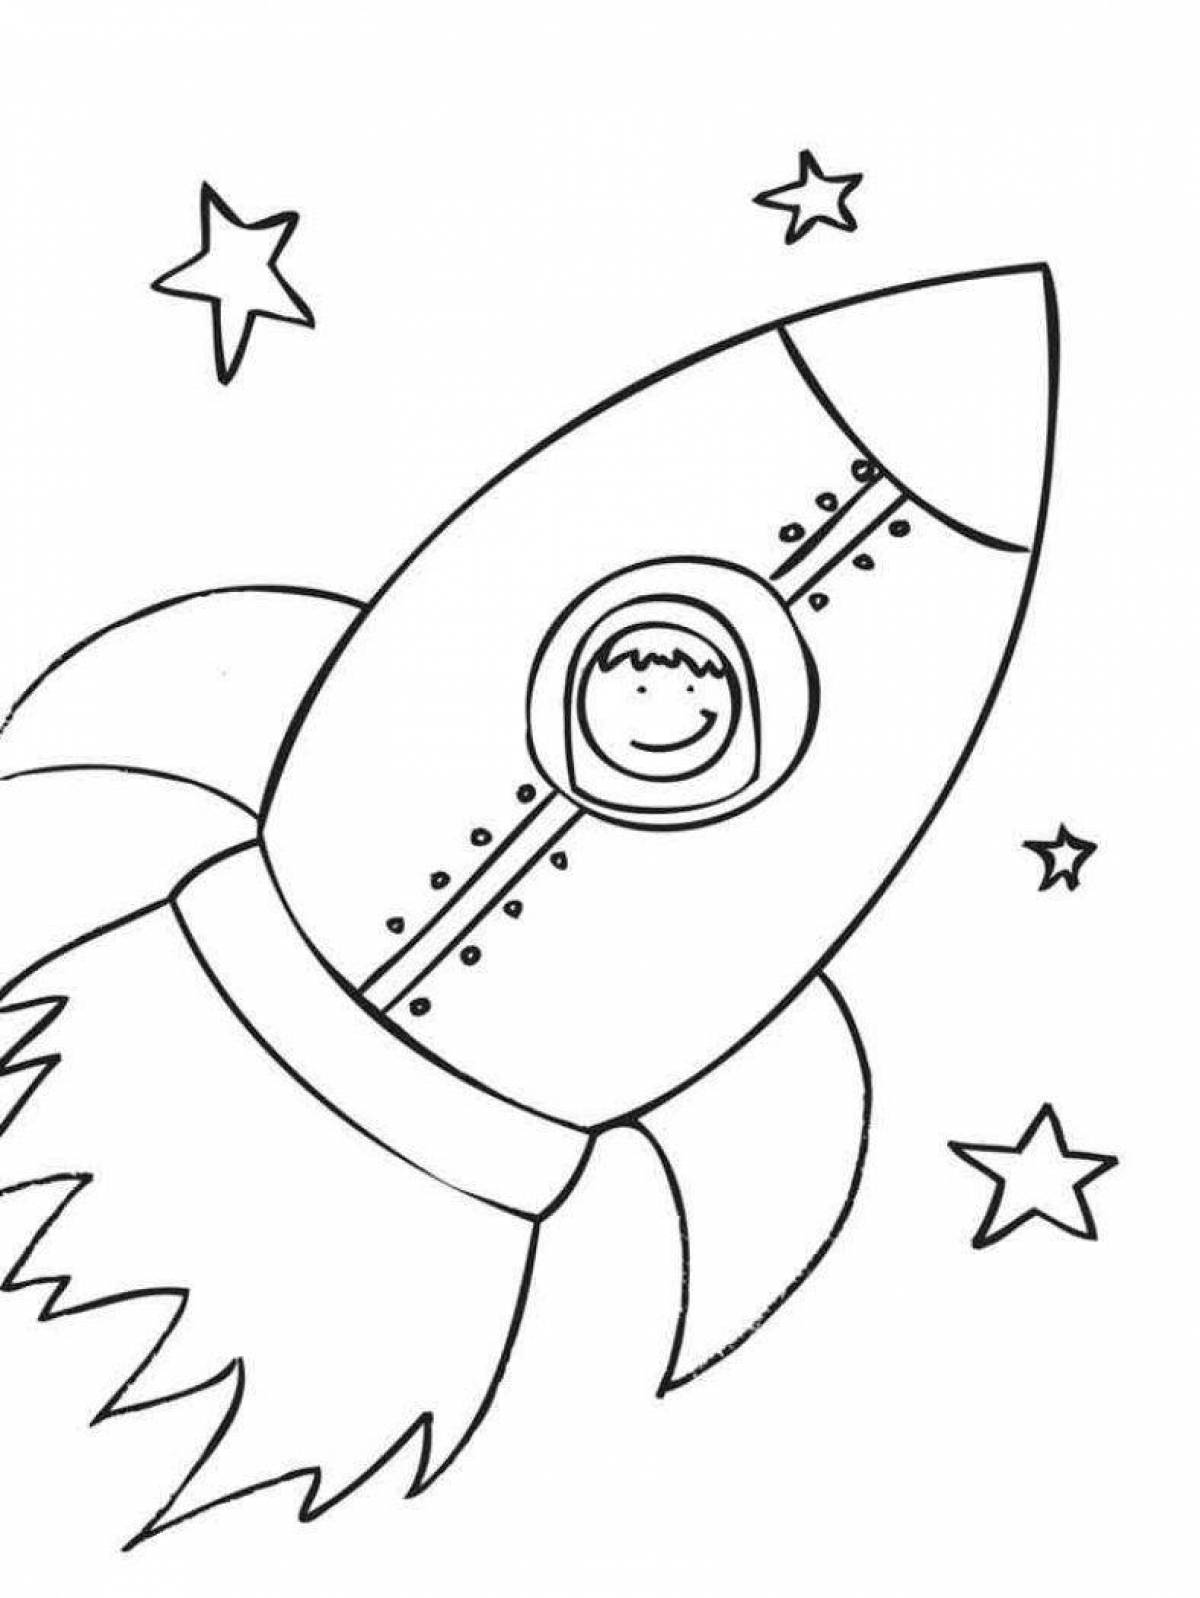 Детские раскраски ко дню космонавтики. Ракета раскраска. Раскраска для малышей. Космос. Космос раскраска для детей. Ракета раскраска для детей.